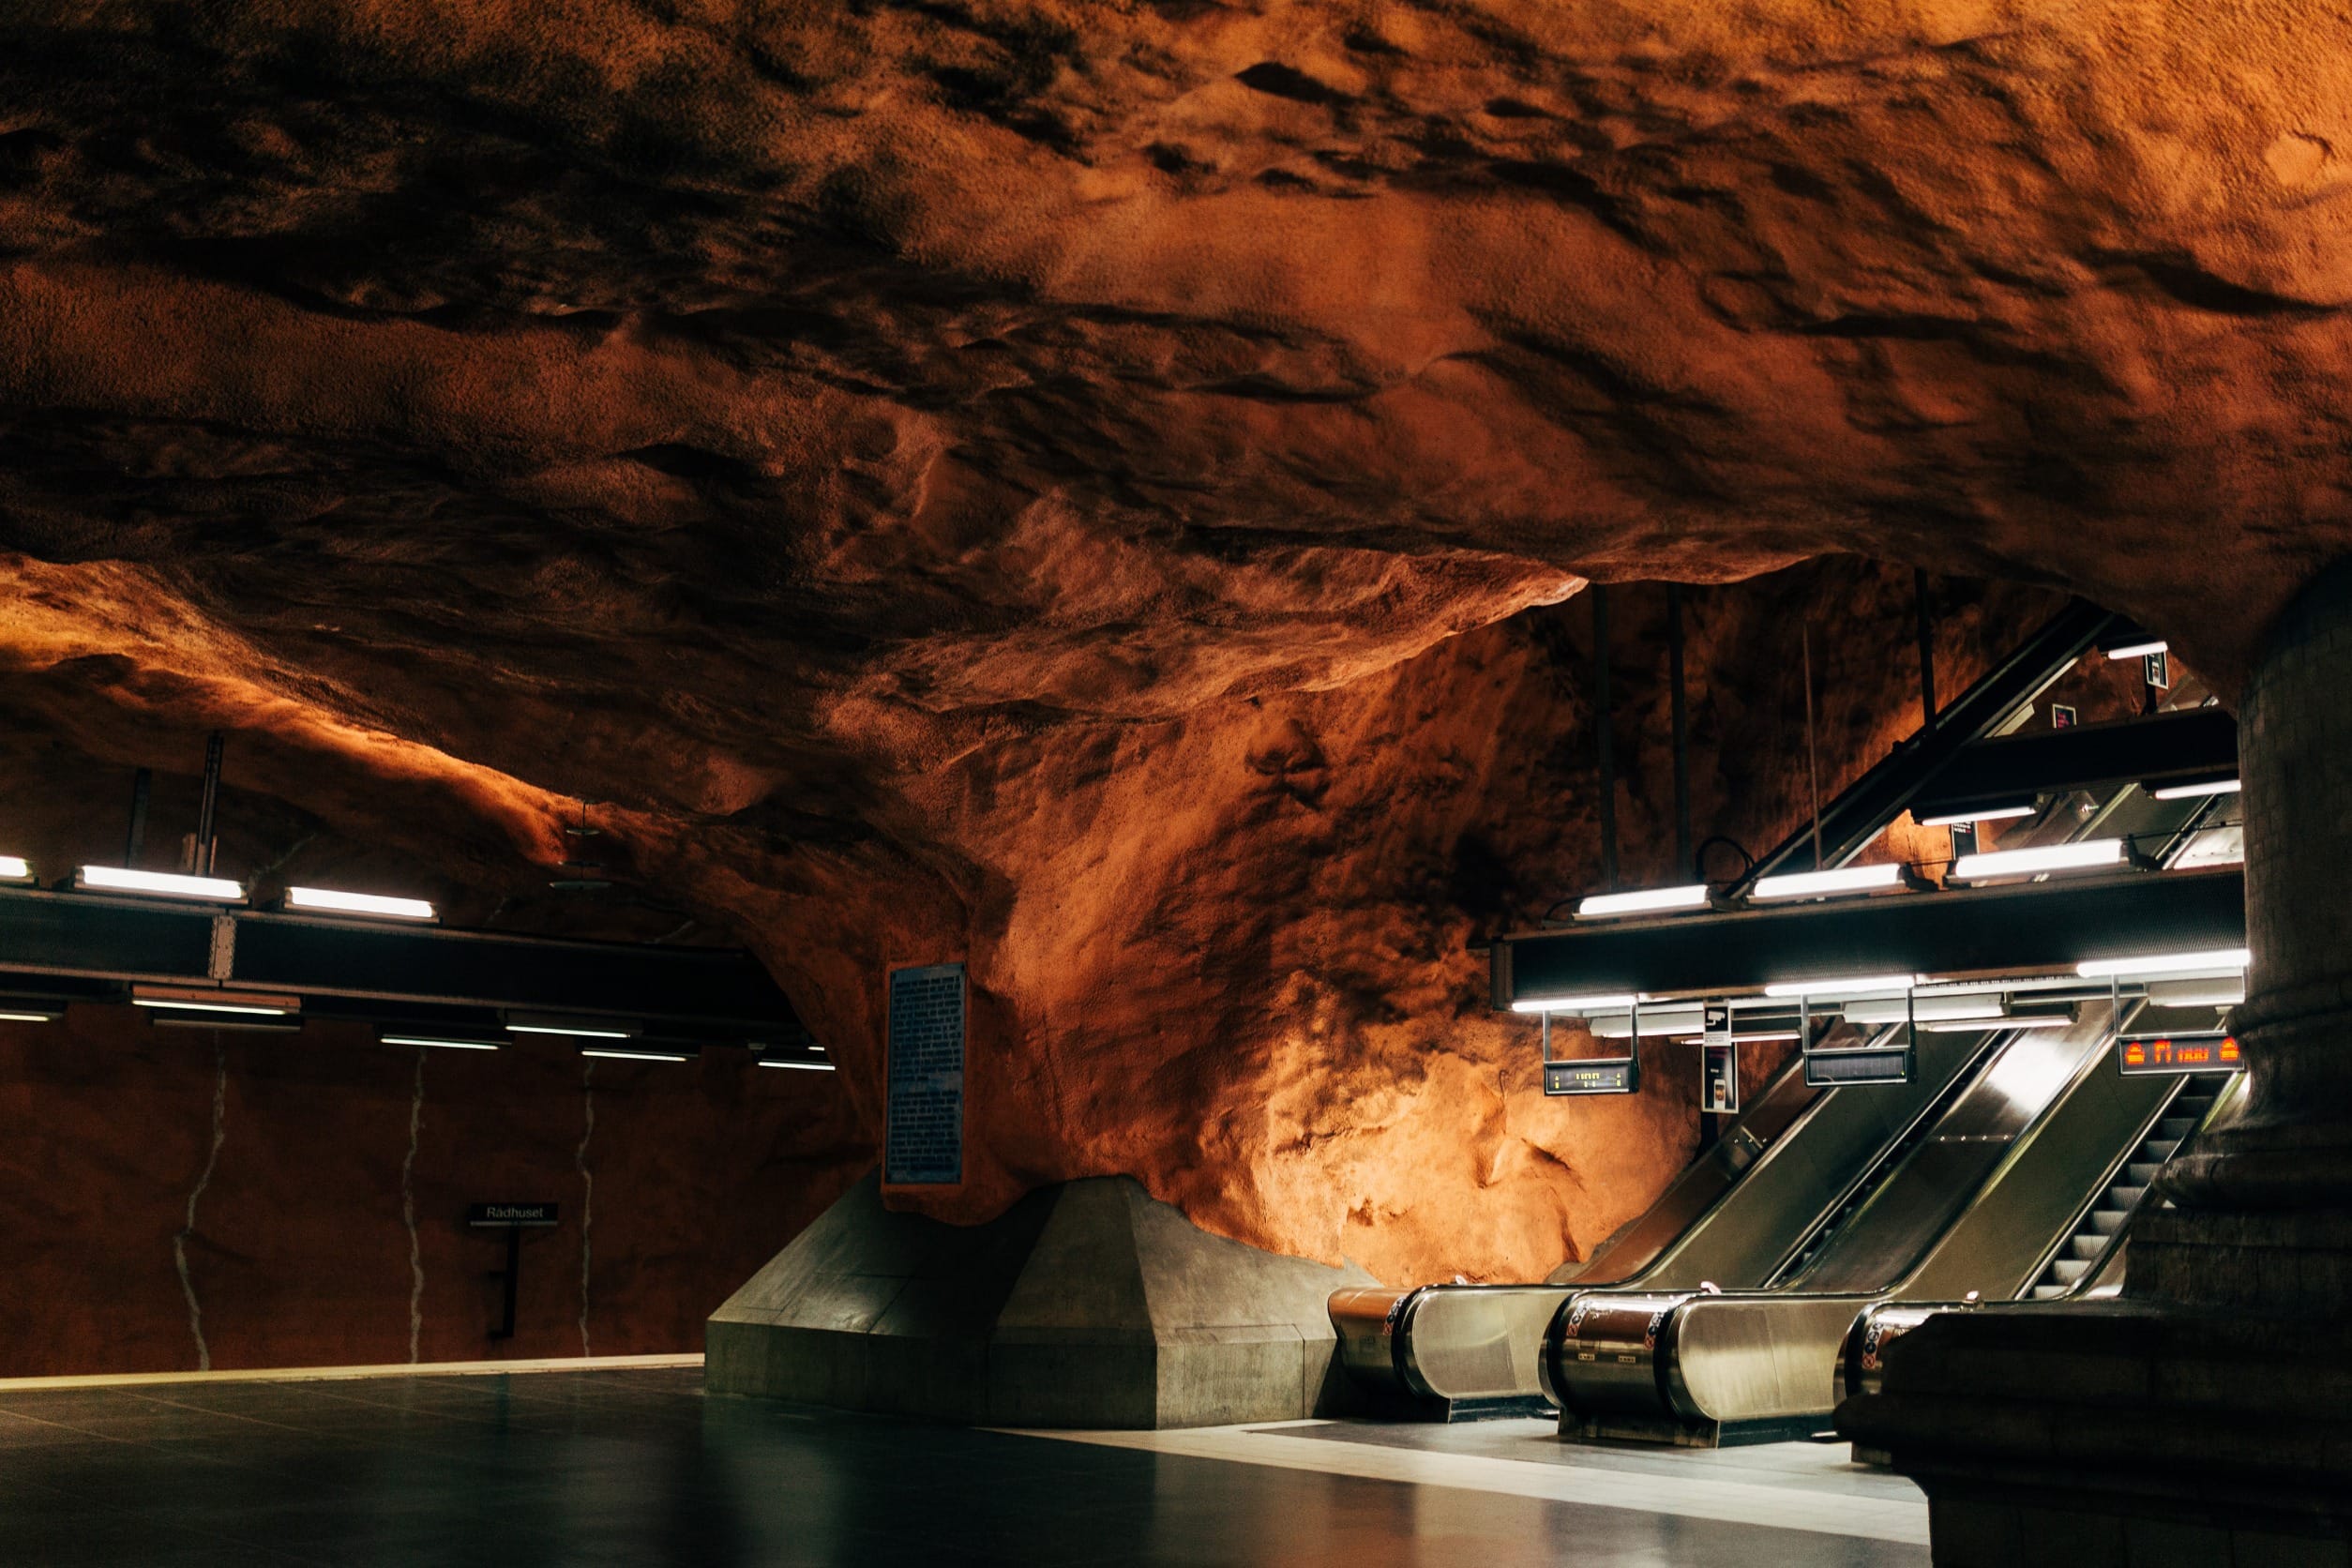 Родхусет – станция метро в Стокгольме имеющая структуру похожую на пещеру и вулканоподобную ржаво-красную окраску